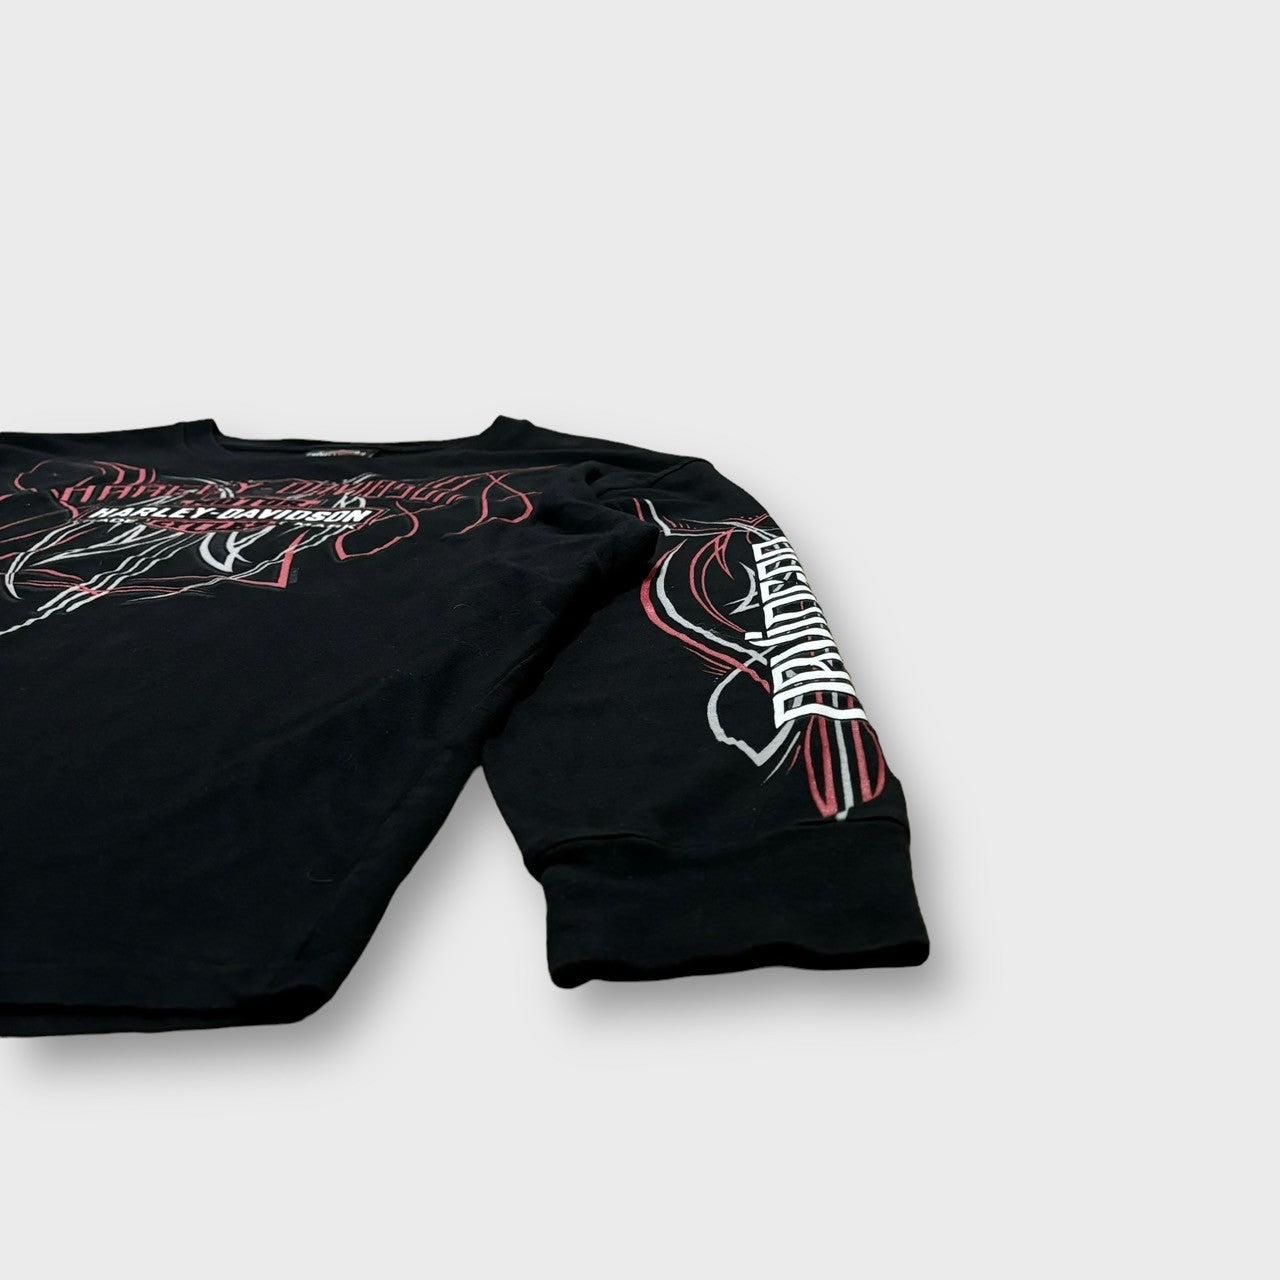 "Harley-Davidson" design l/s t-shirt